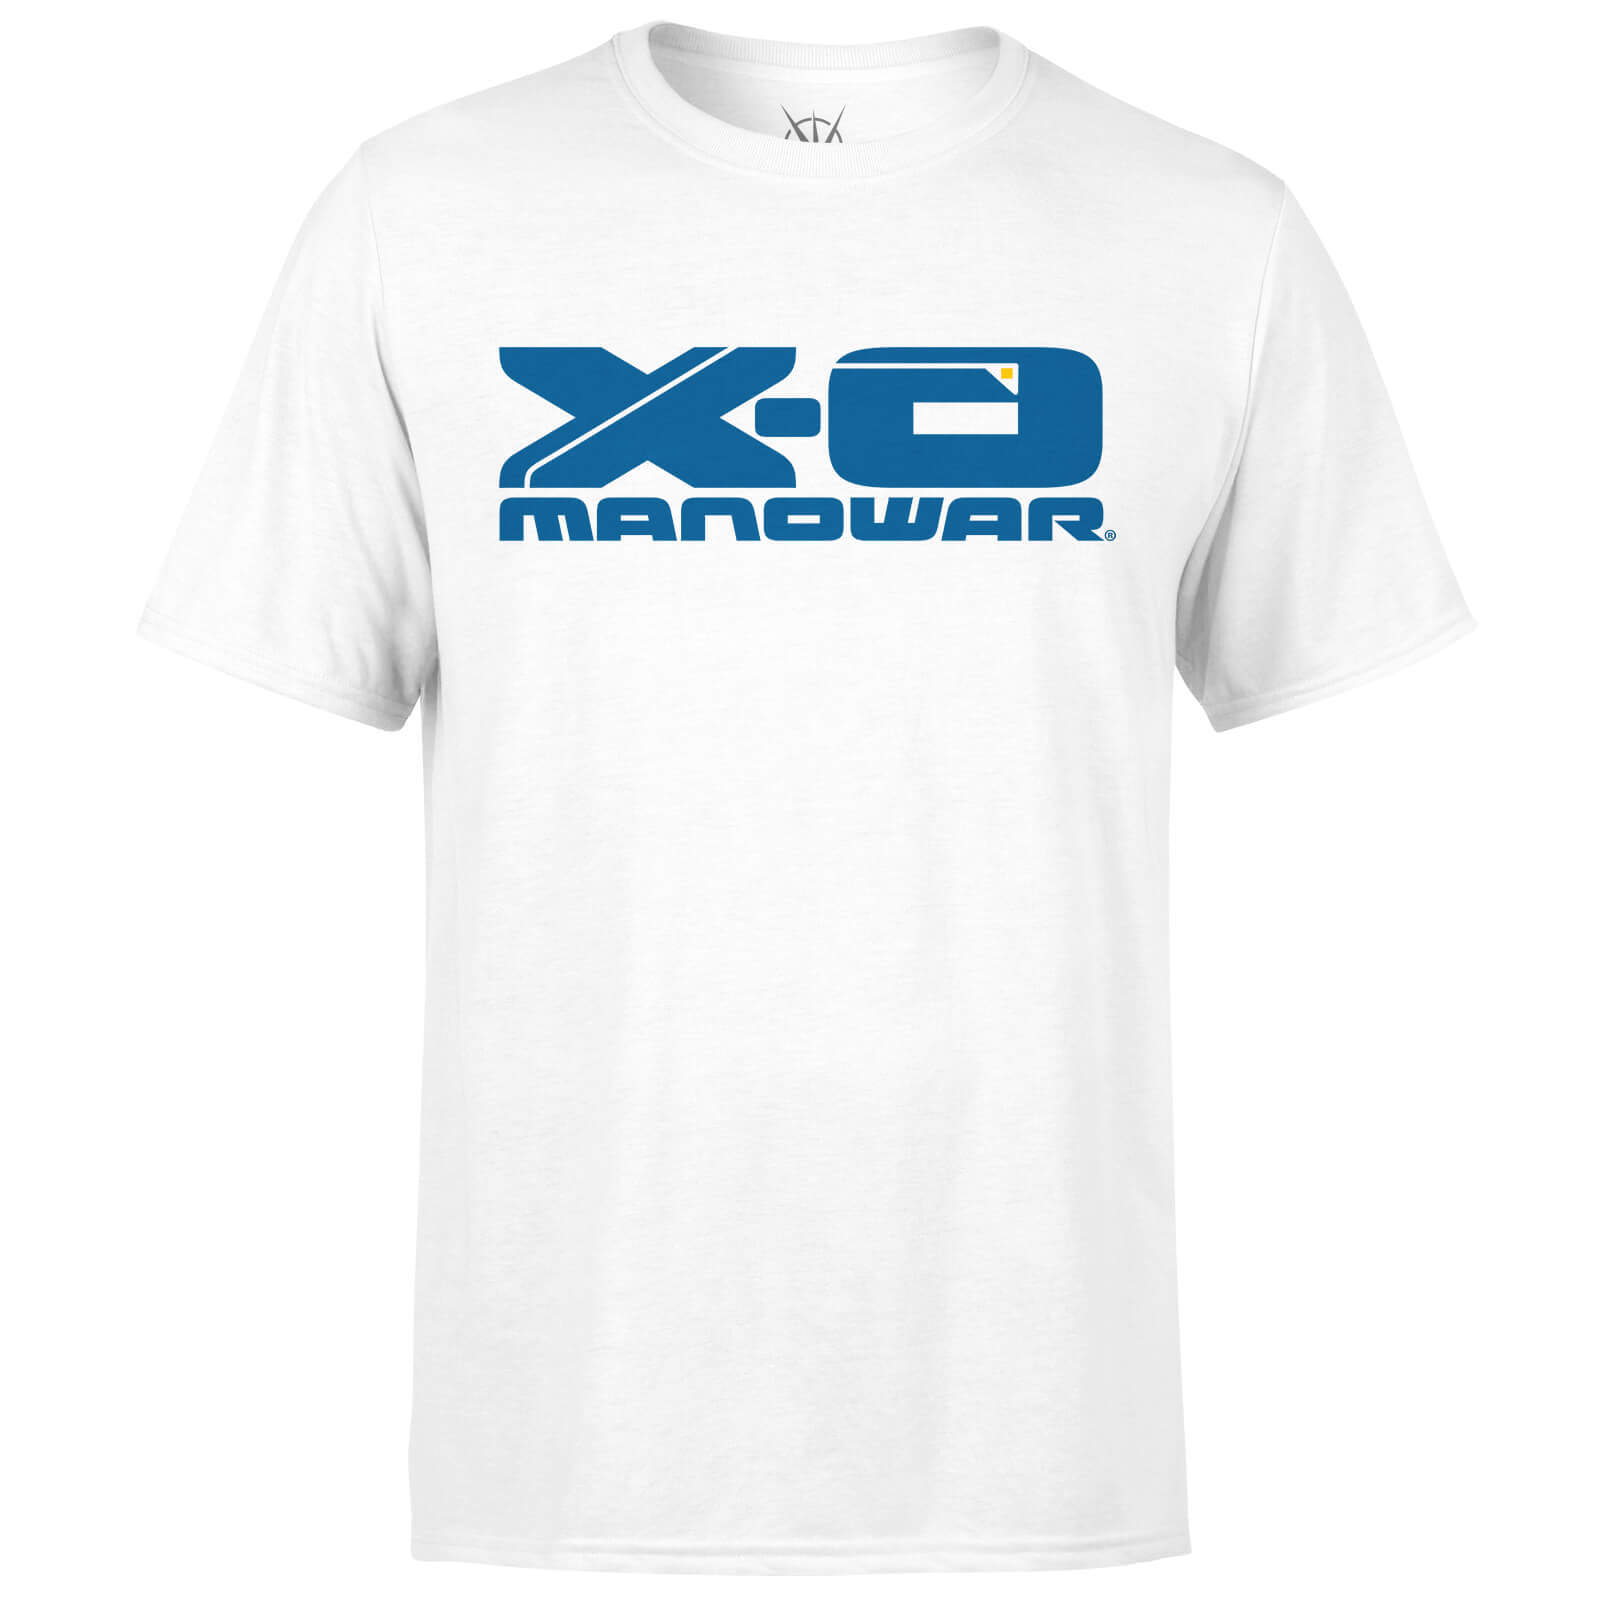 Valiant Comics X-O Manowar Logo T-Shirt - White - S - White